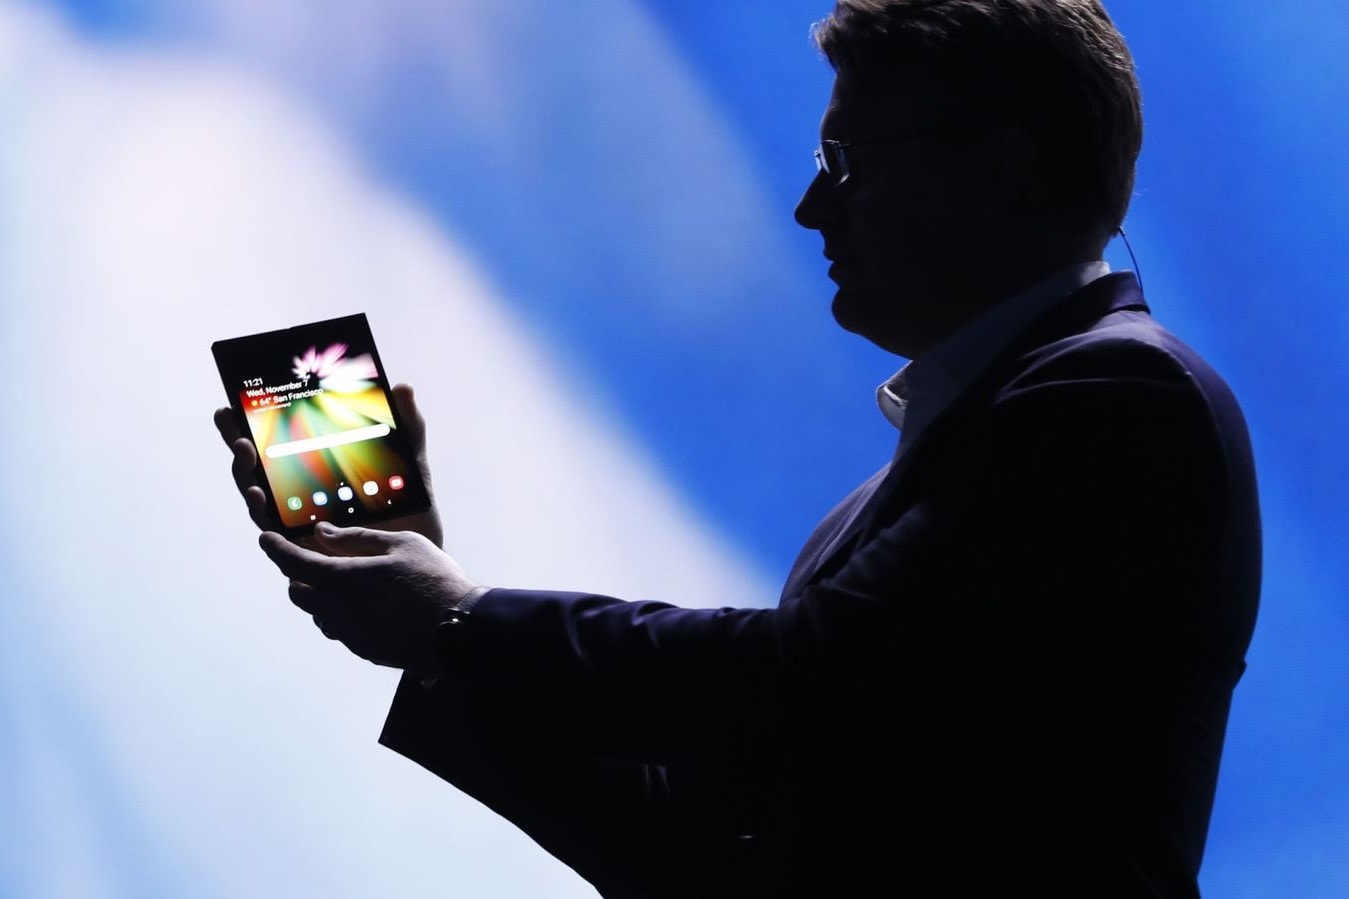 폴더블폰과 노치 디스플레이, 삼성이 공개한 새 스마트폰 혁신